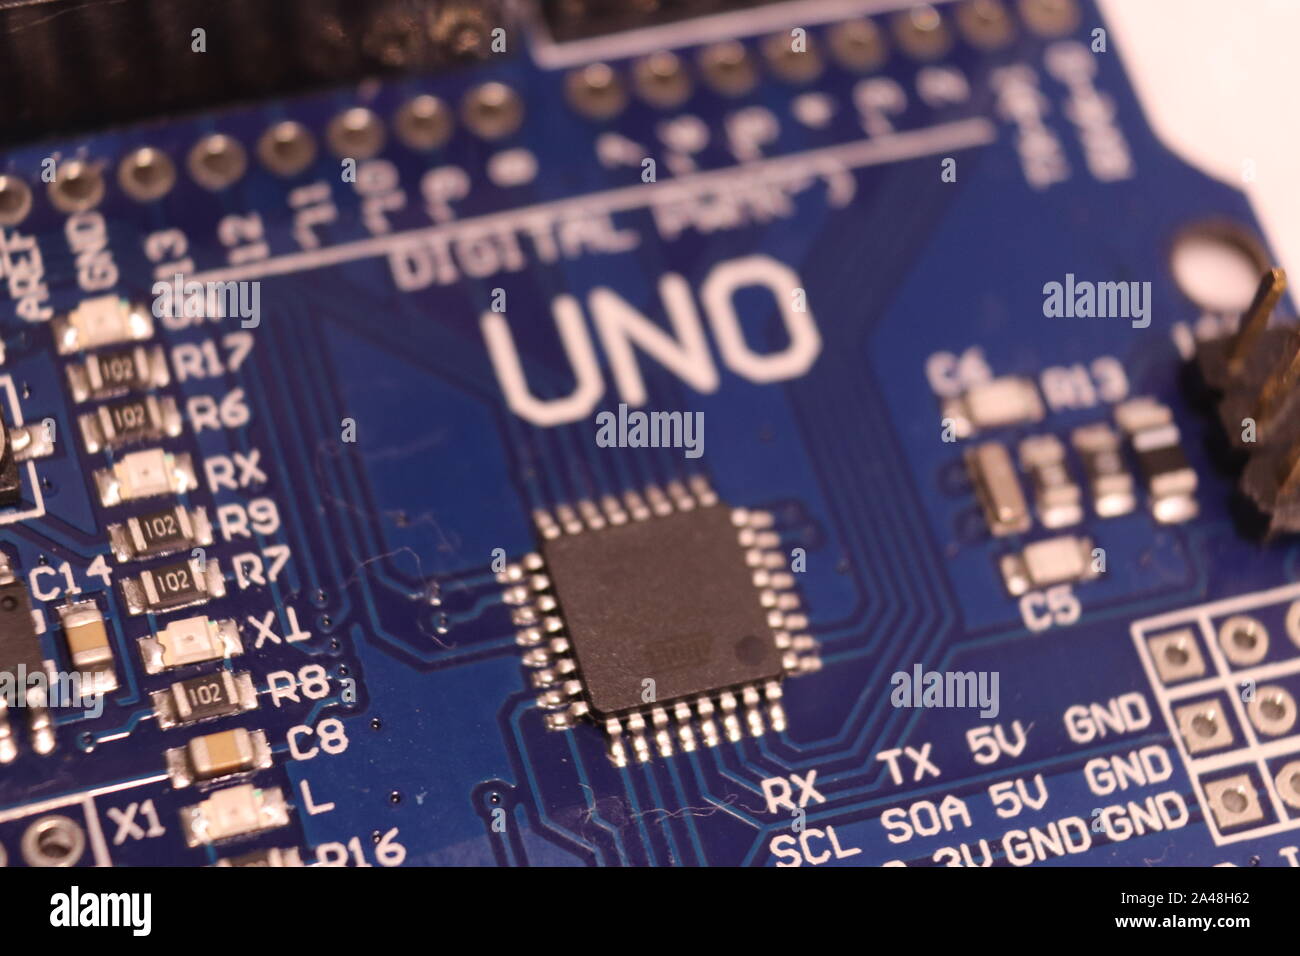 A knock-off Arduino Uno board. Stock Photo